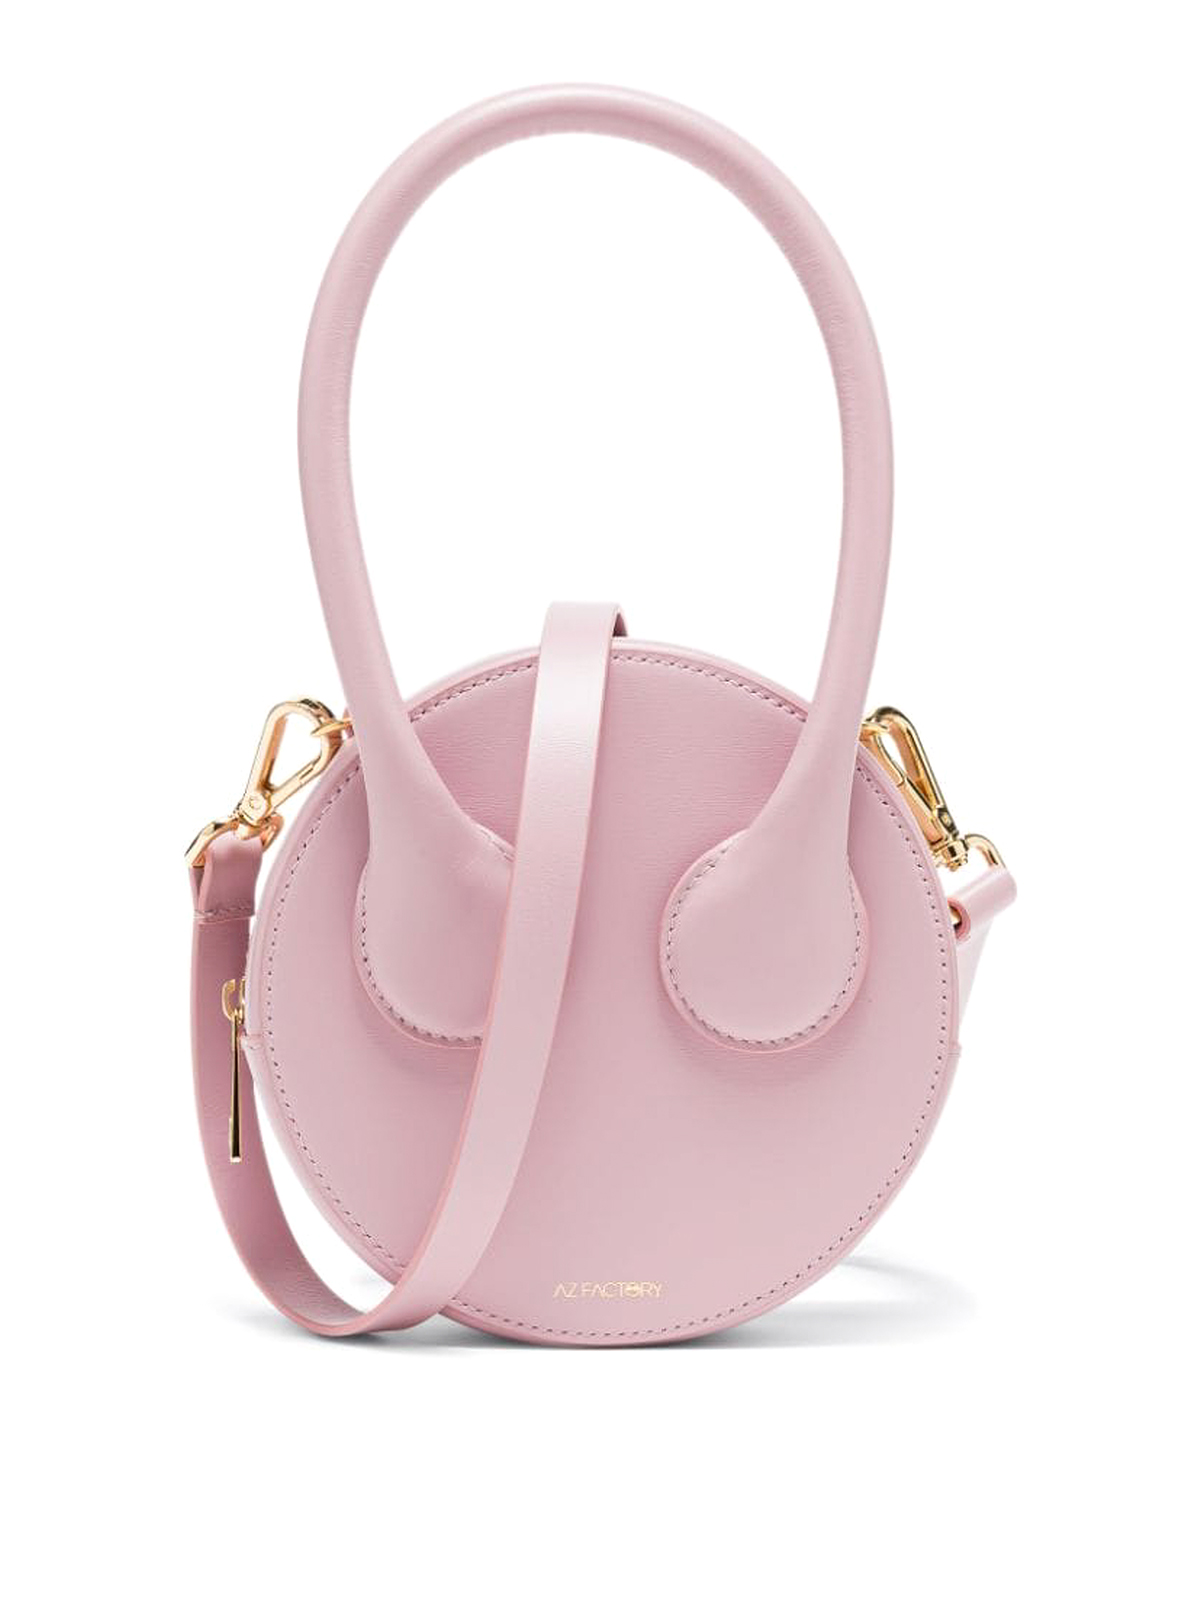 Louis Vuitton Bag | 3-D cake as Vuitton bag. All edible deco… | Flickr